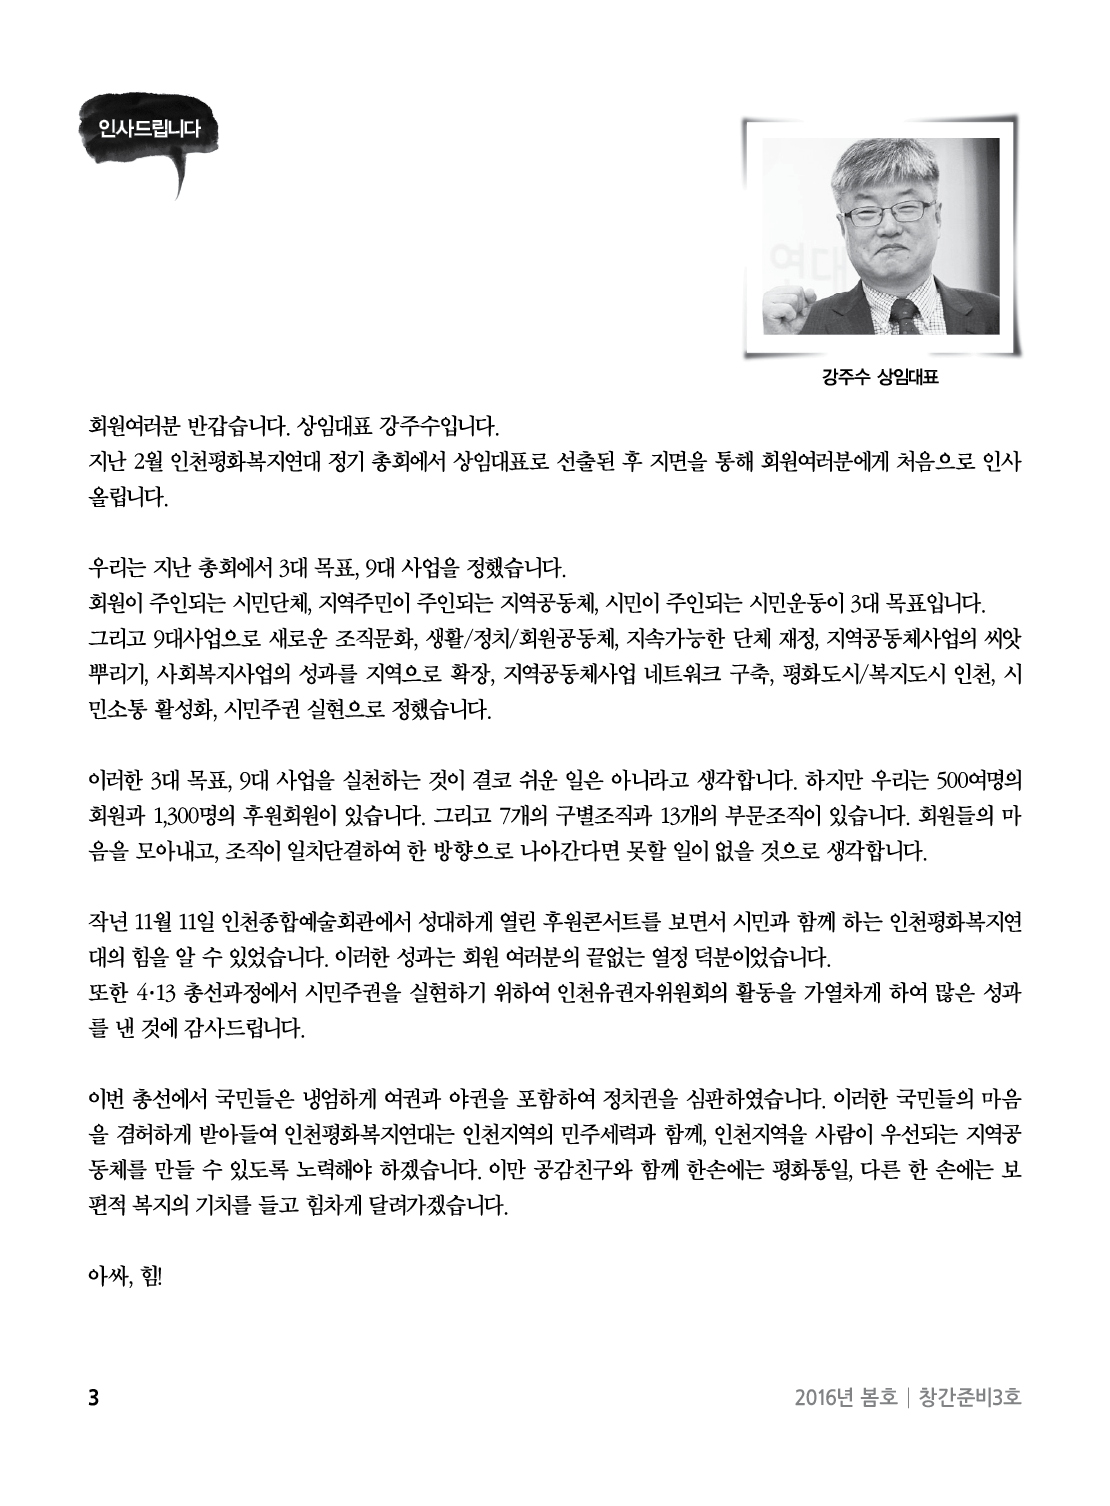 아웃라인 인천평화복지연대 소식지창간준비3호3.jpg